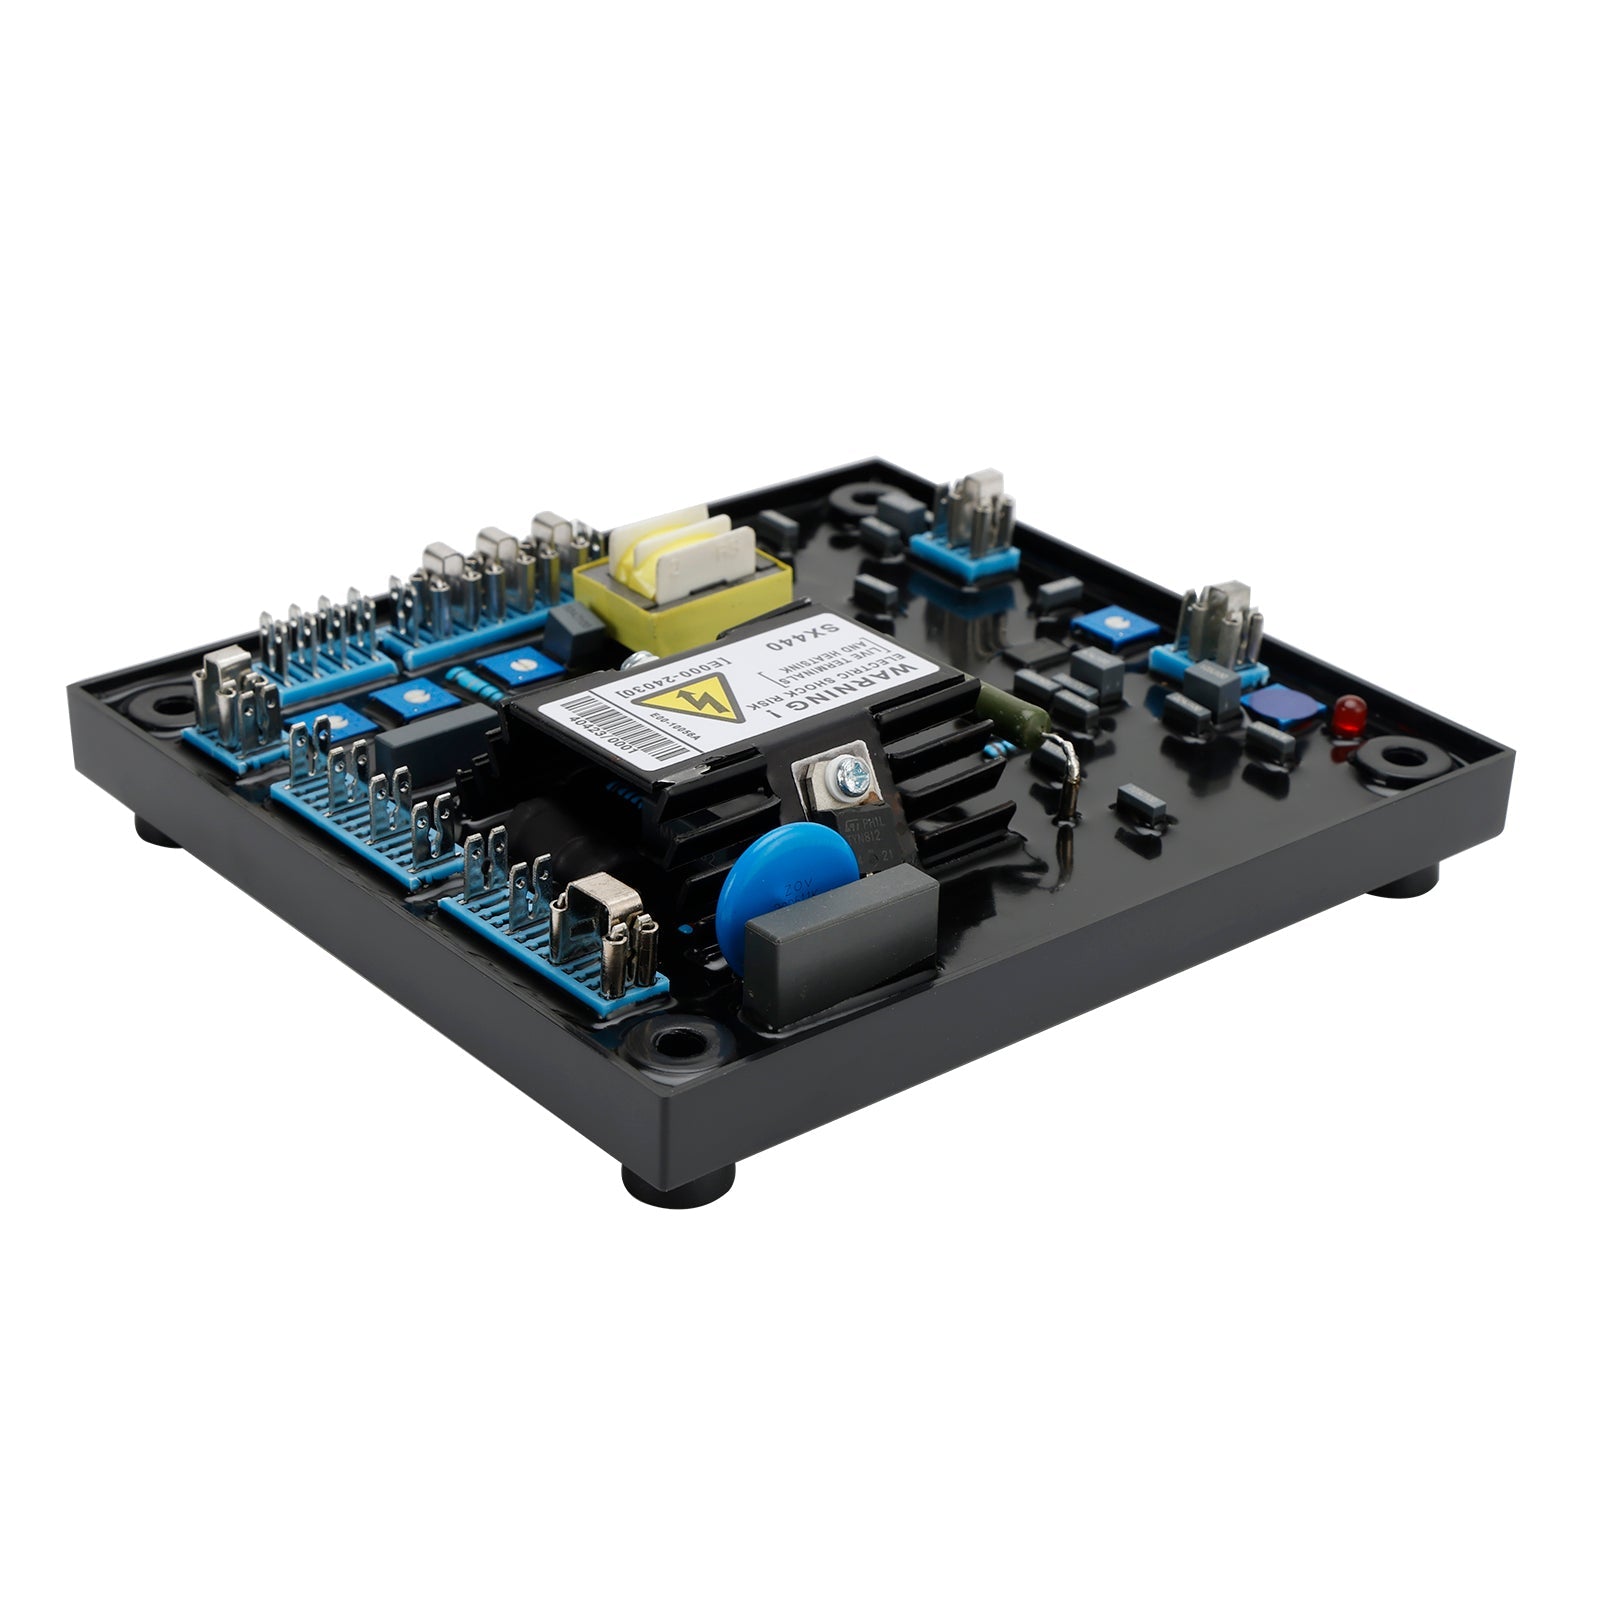 Régulateur de tension automatique AVR SX440 compatible avec les pièces du générateur